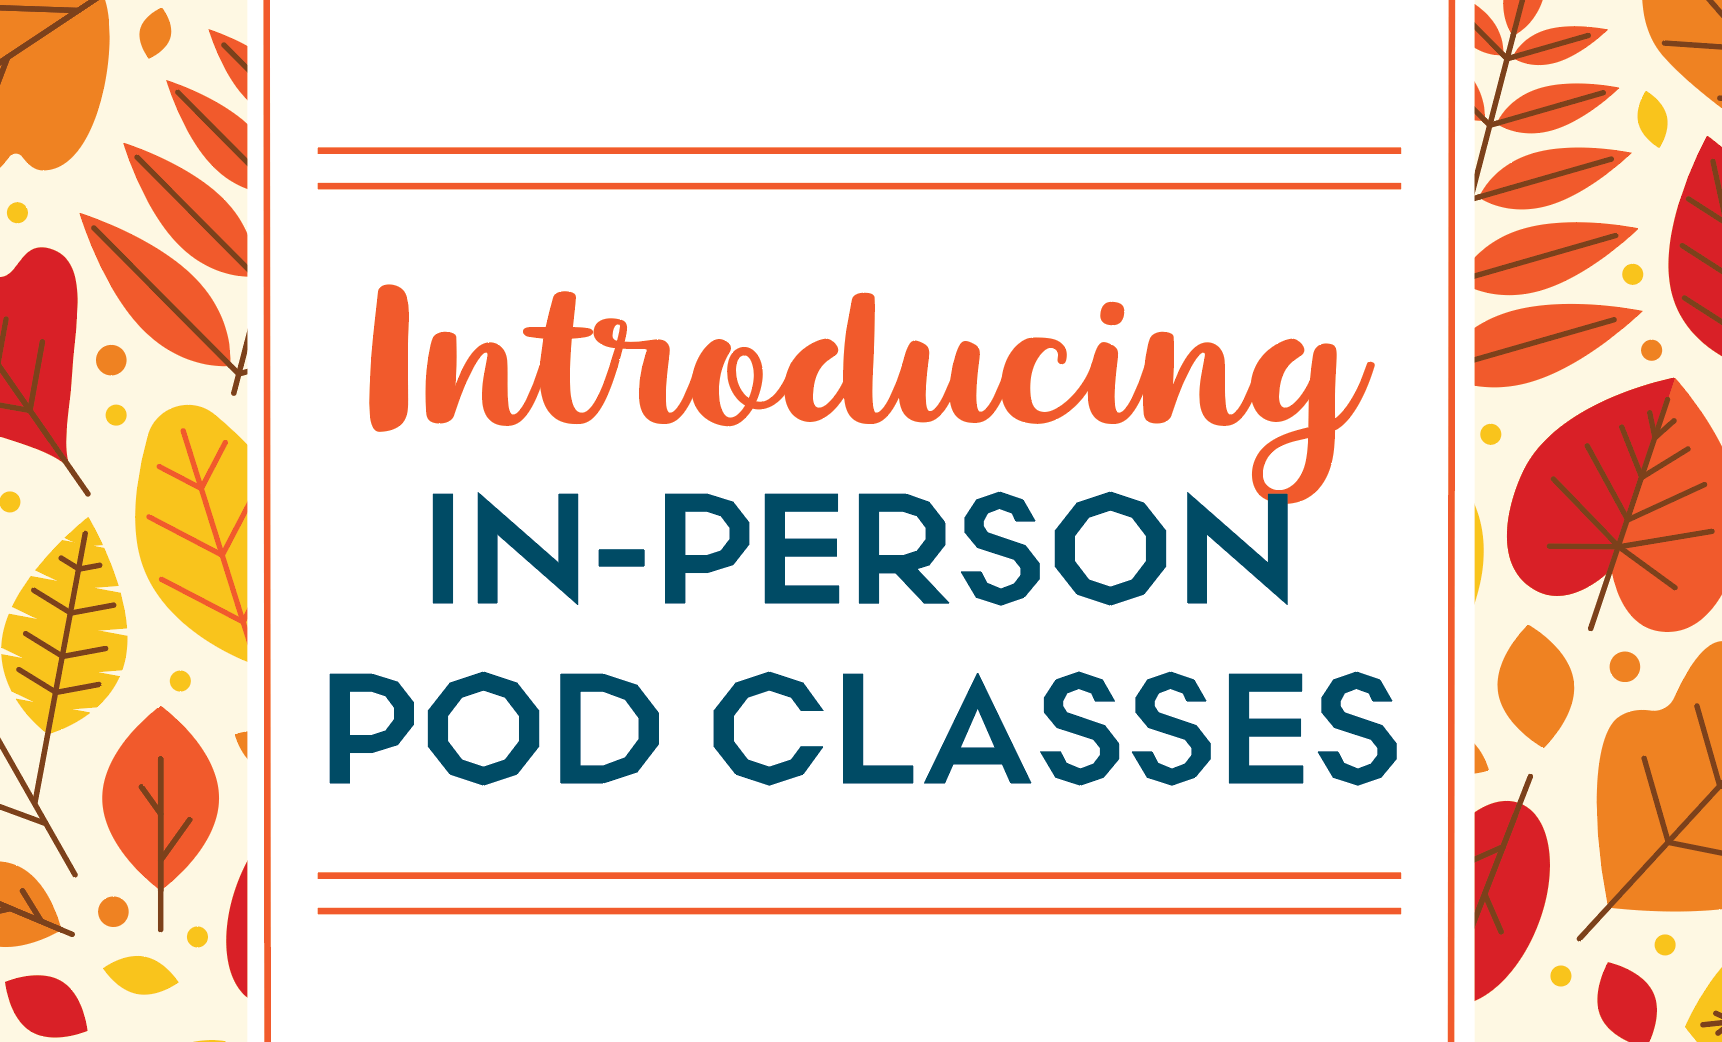 In-Person Pod Classes